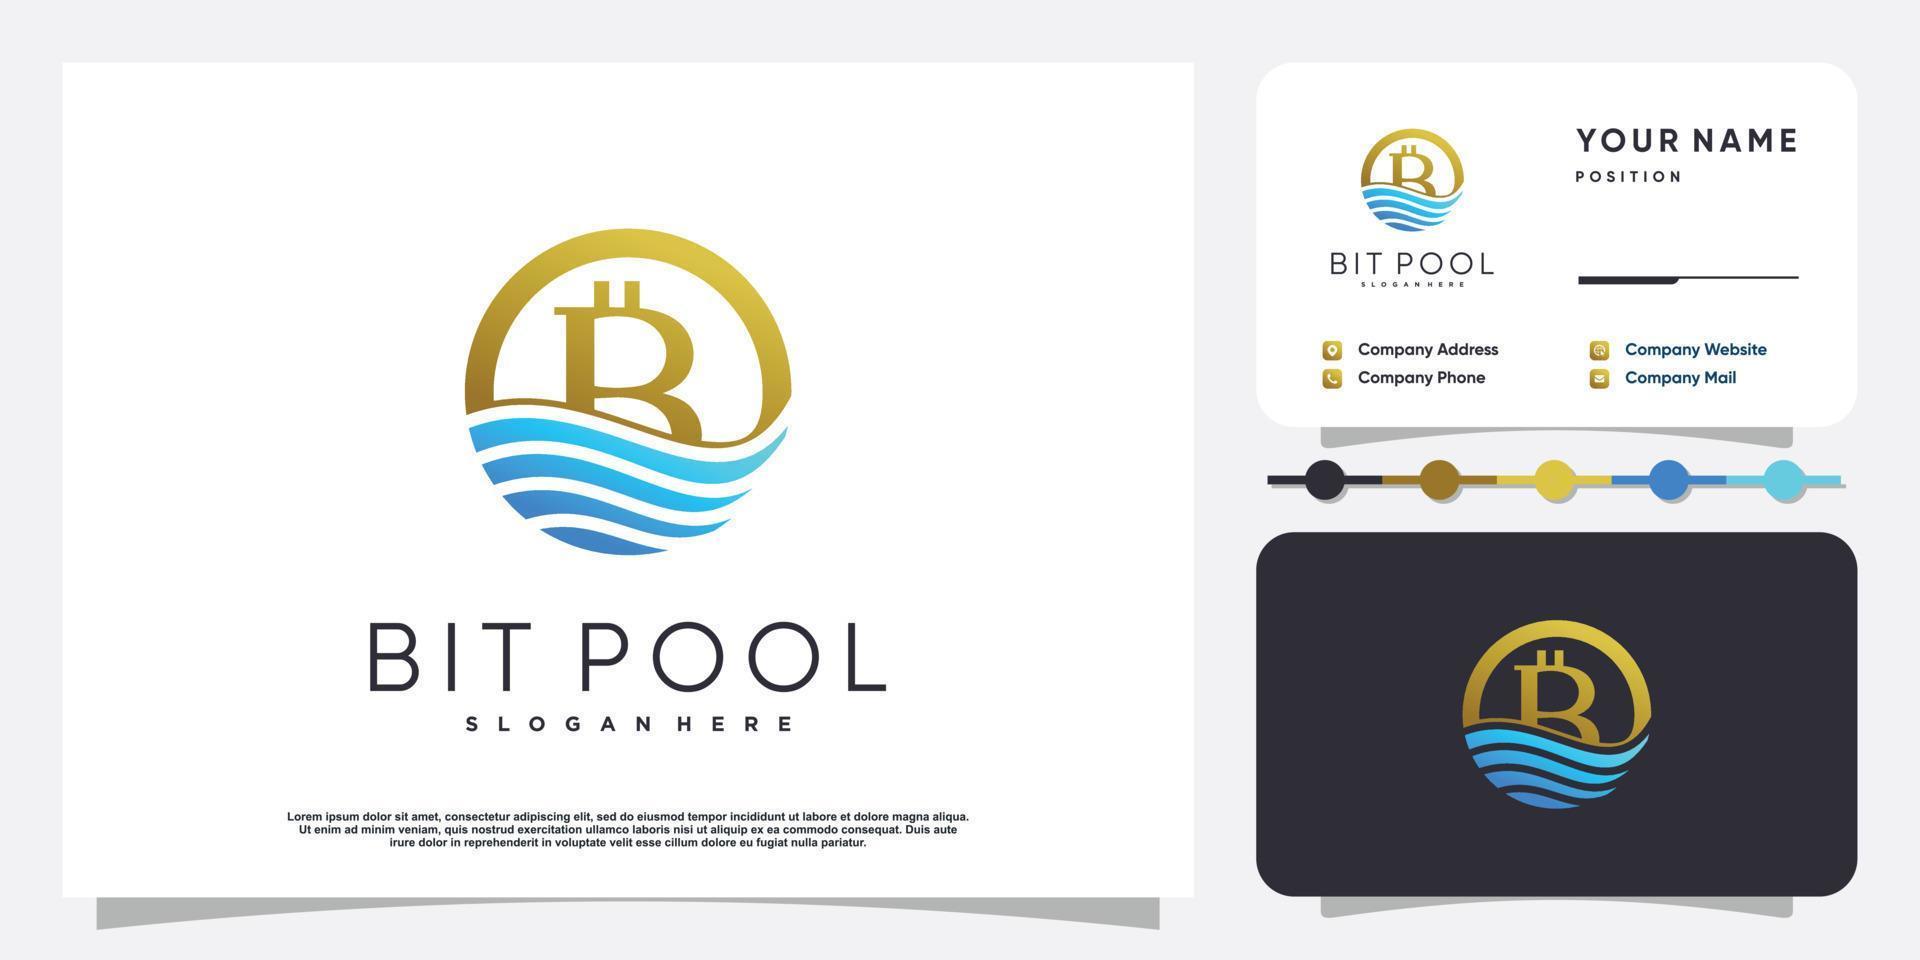 création de logo bitpool avec vecteur premium eau et élément doré